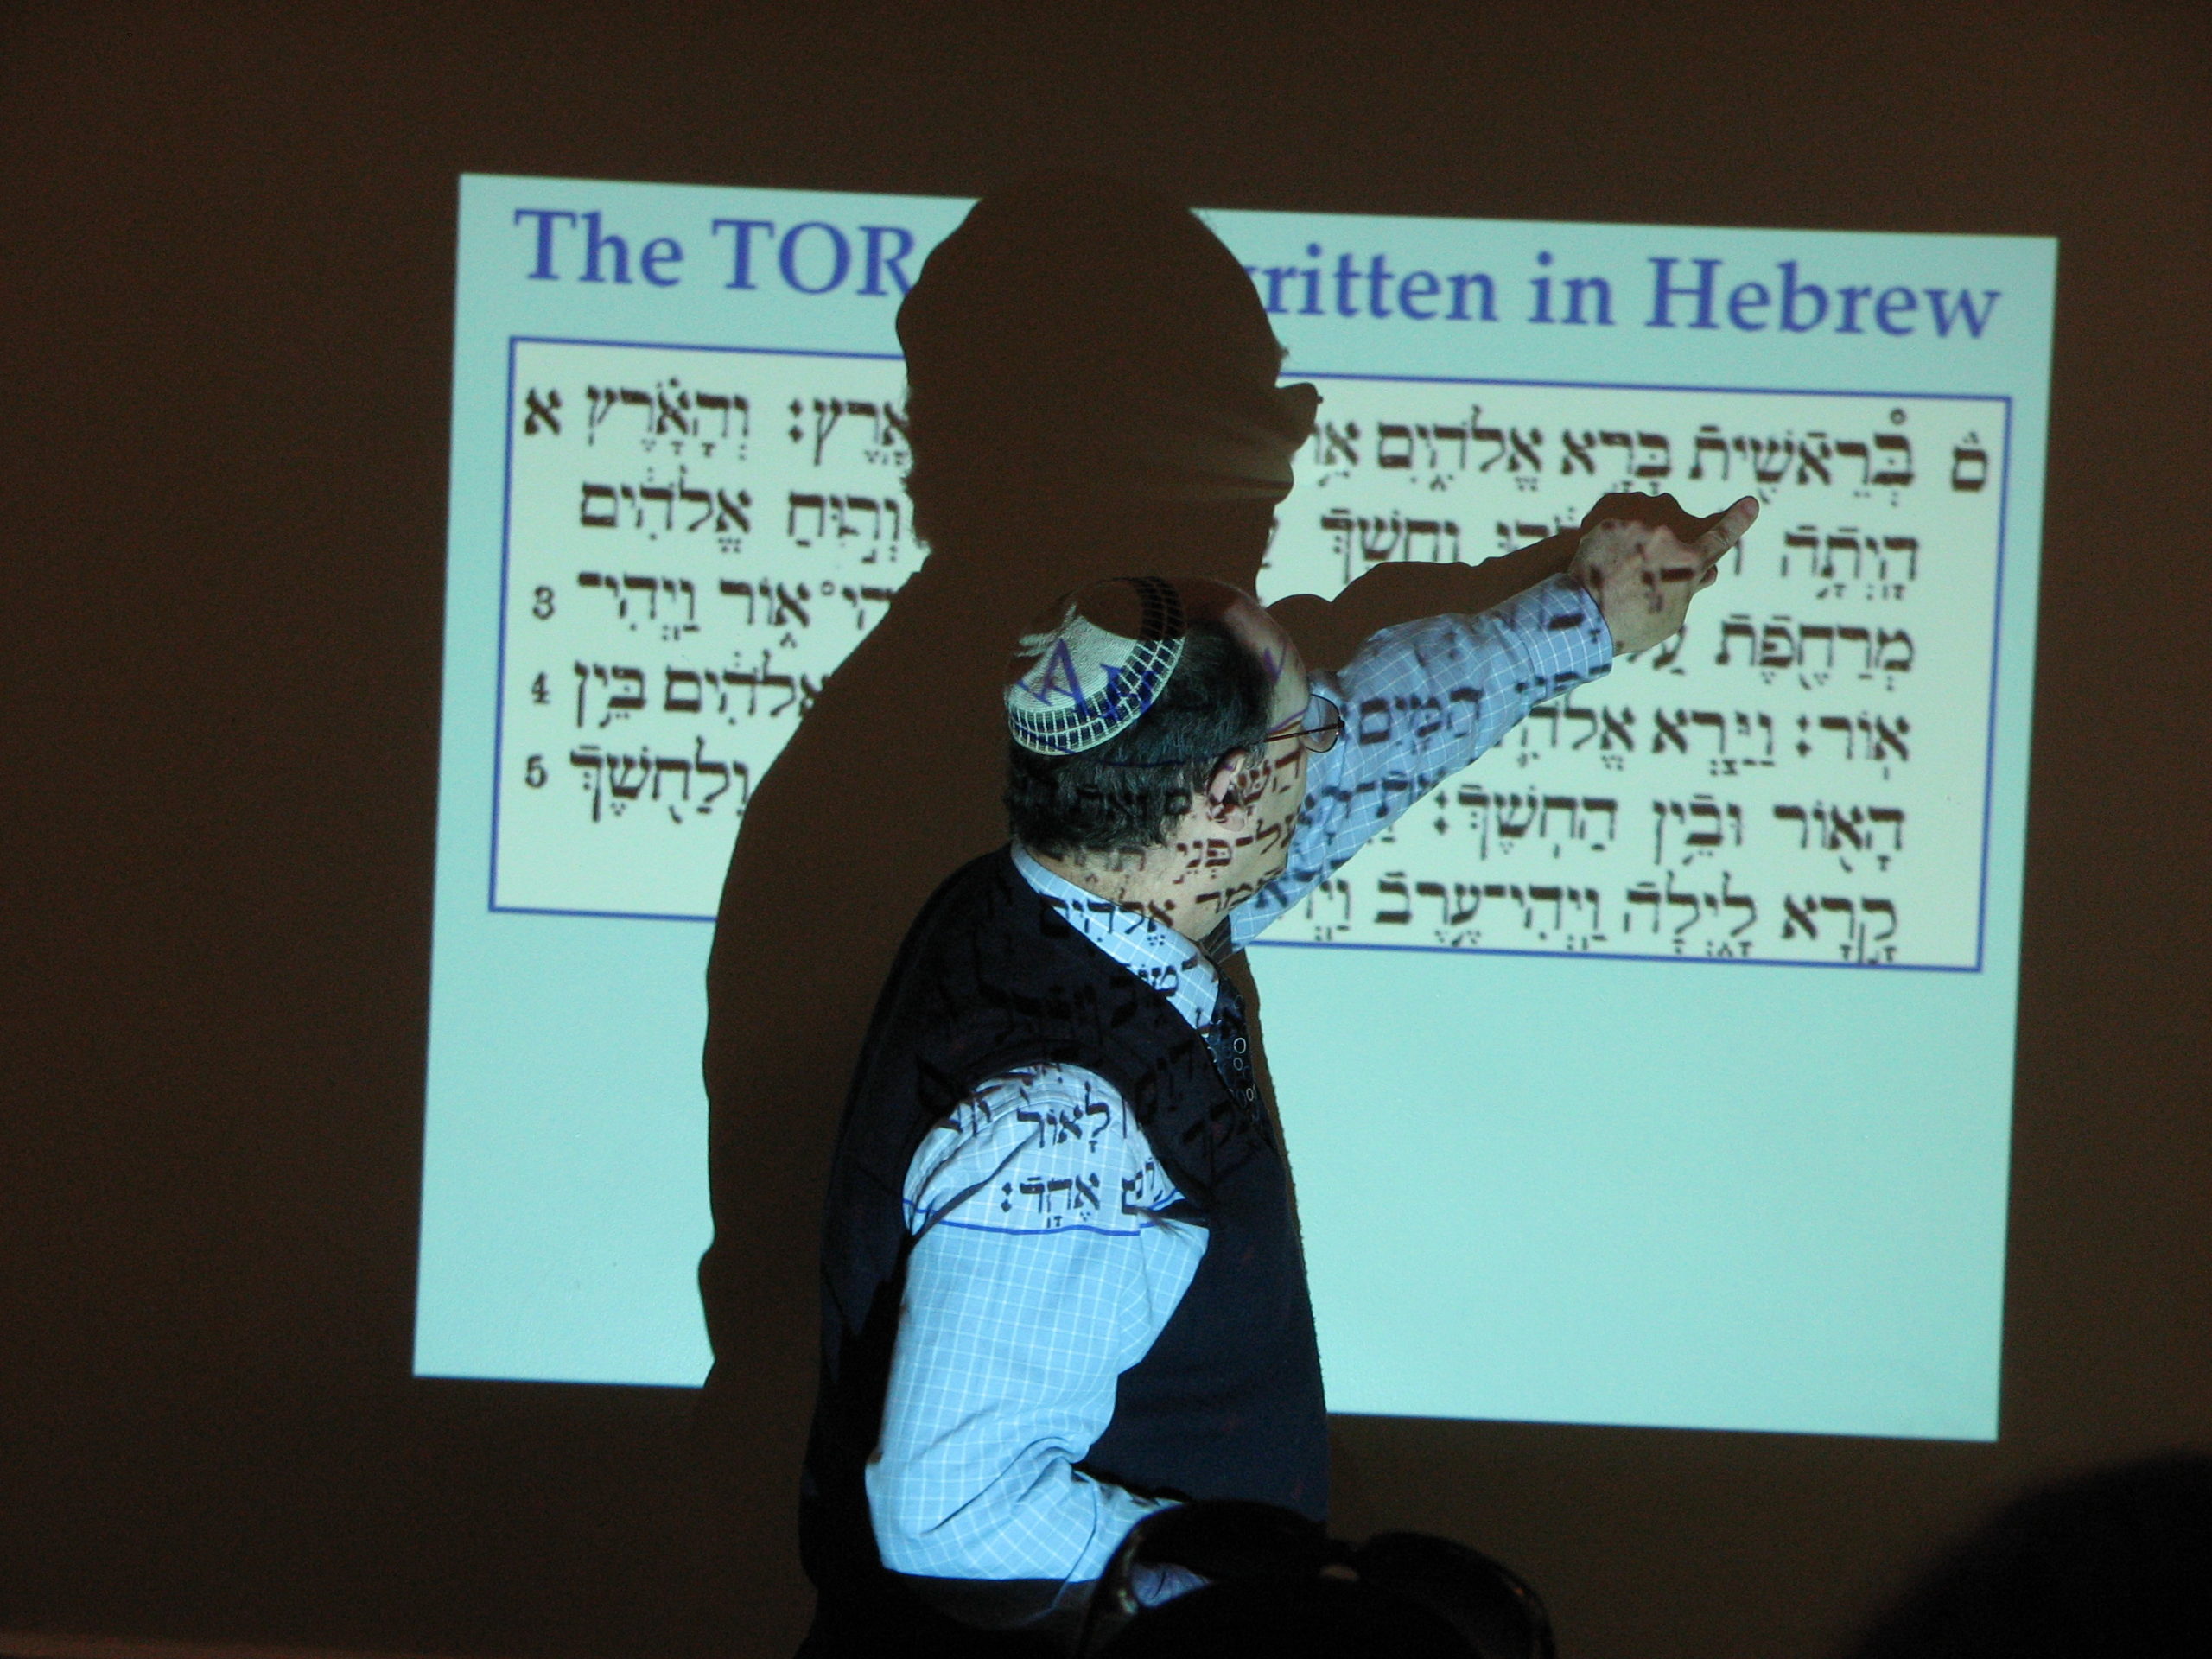 A deeper experiential understanding of Judaism